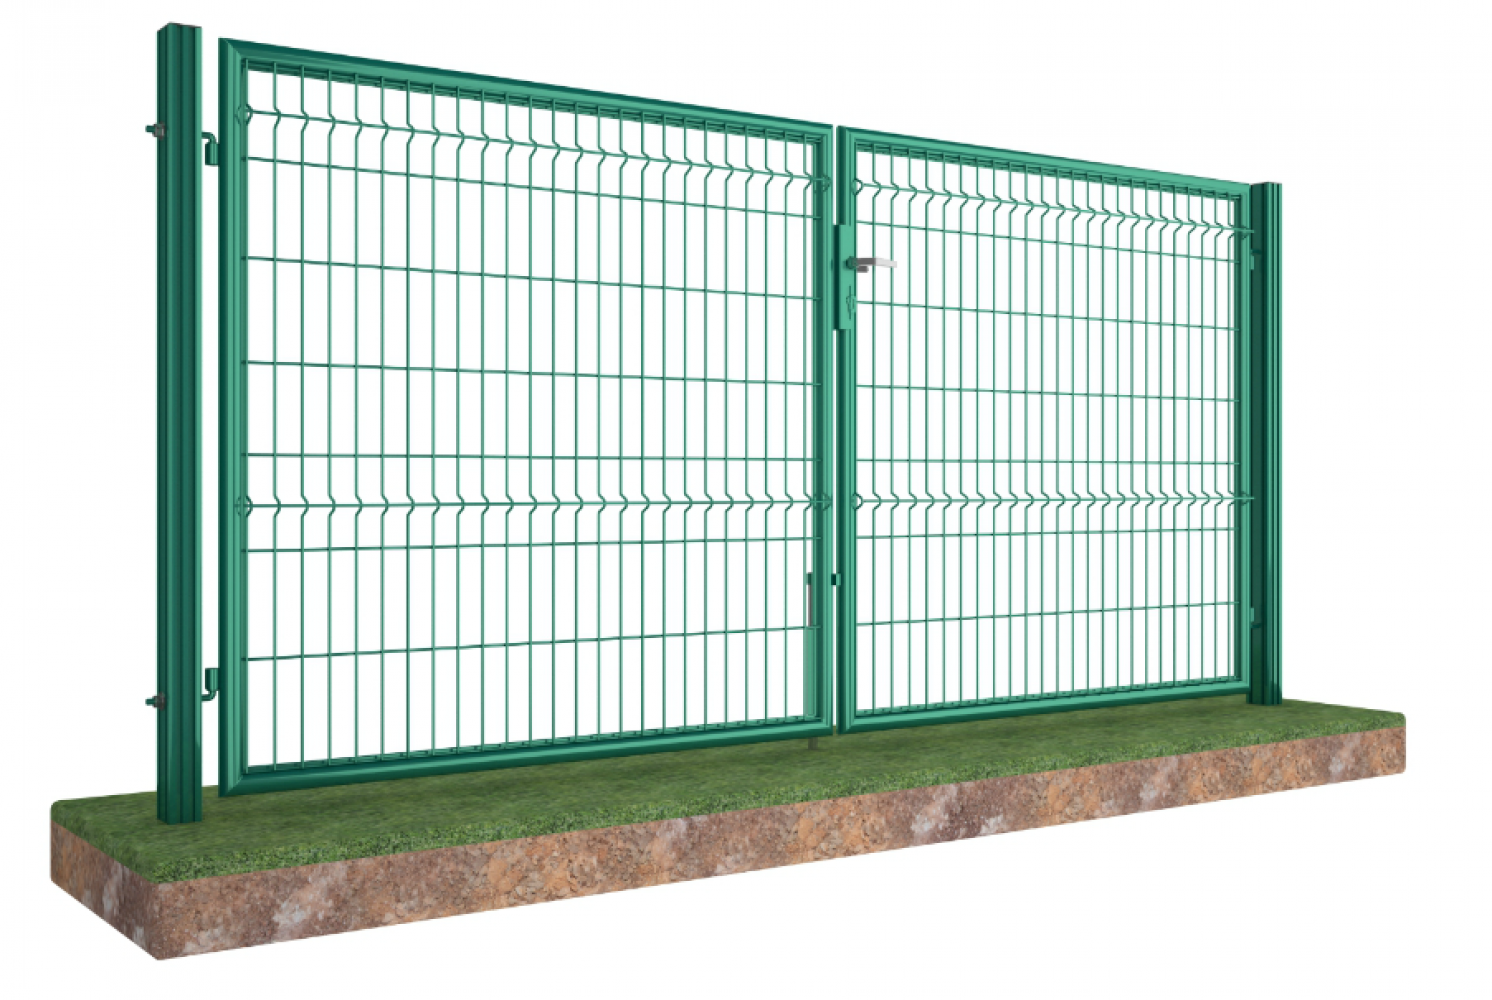 Ворота Фенсис распашные. Калитка (h=2.0м)Fensys. Откатные ворота со сварной сеткой стандарт ППК 2,0*4,0м. Fensys ворота распашные.